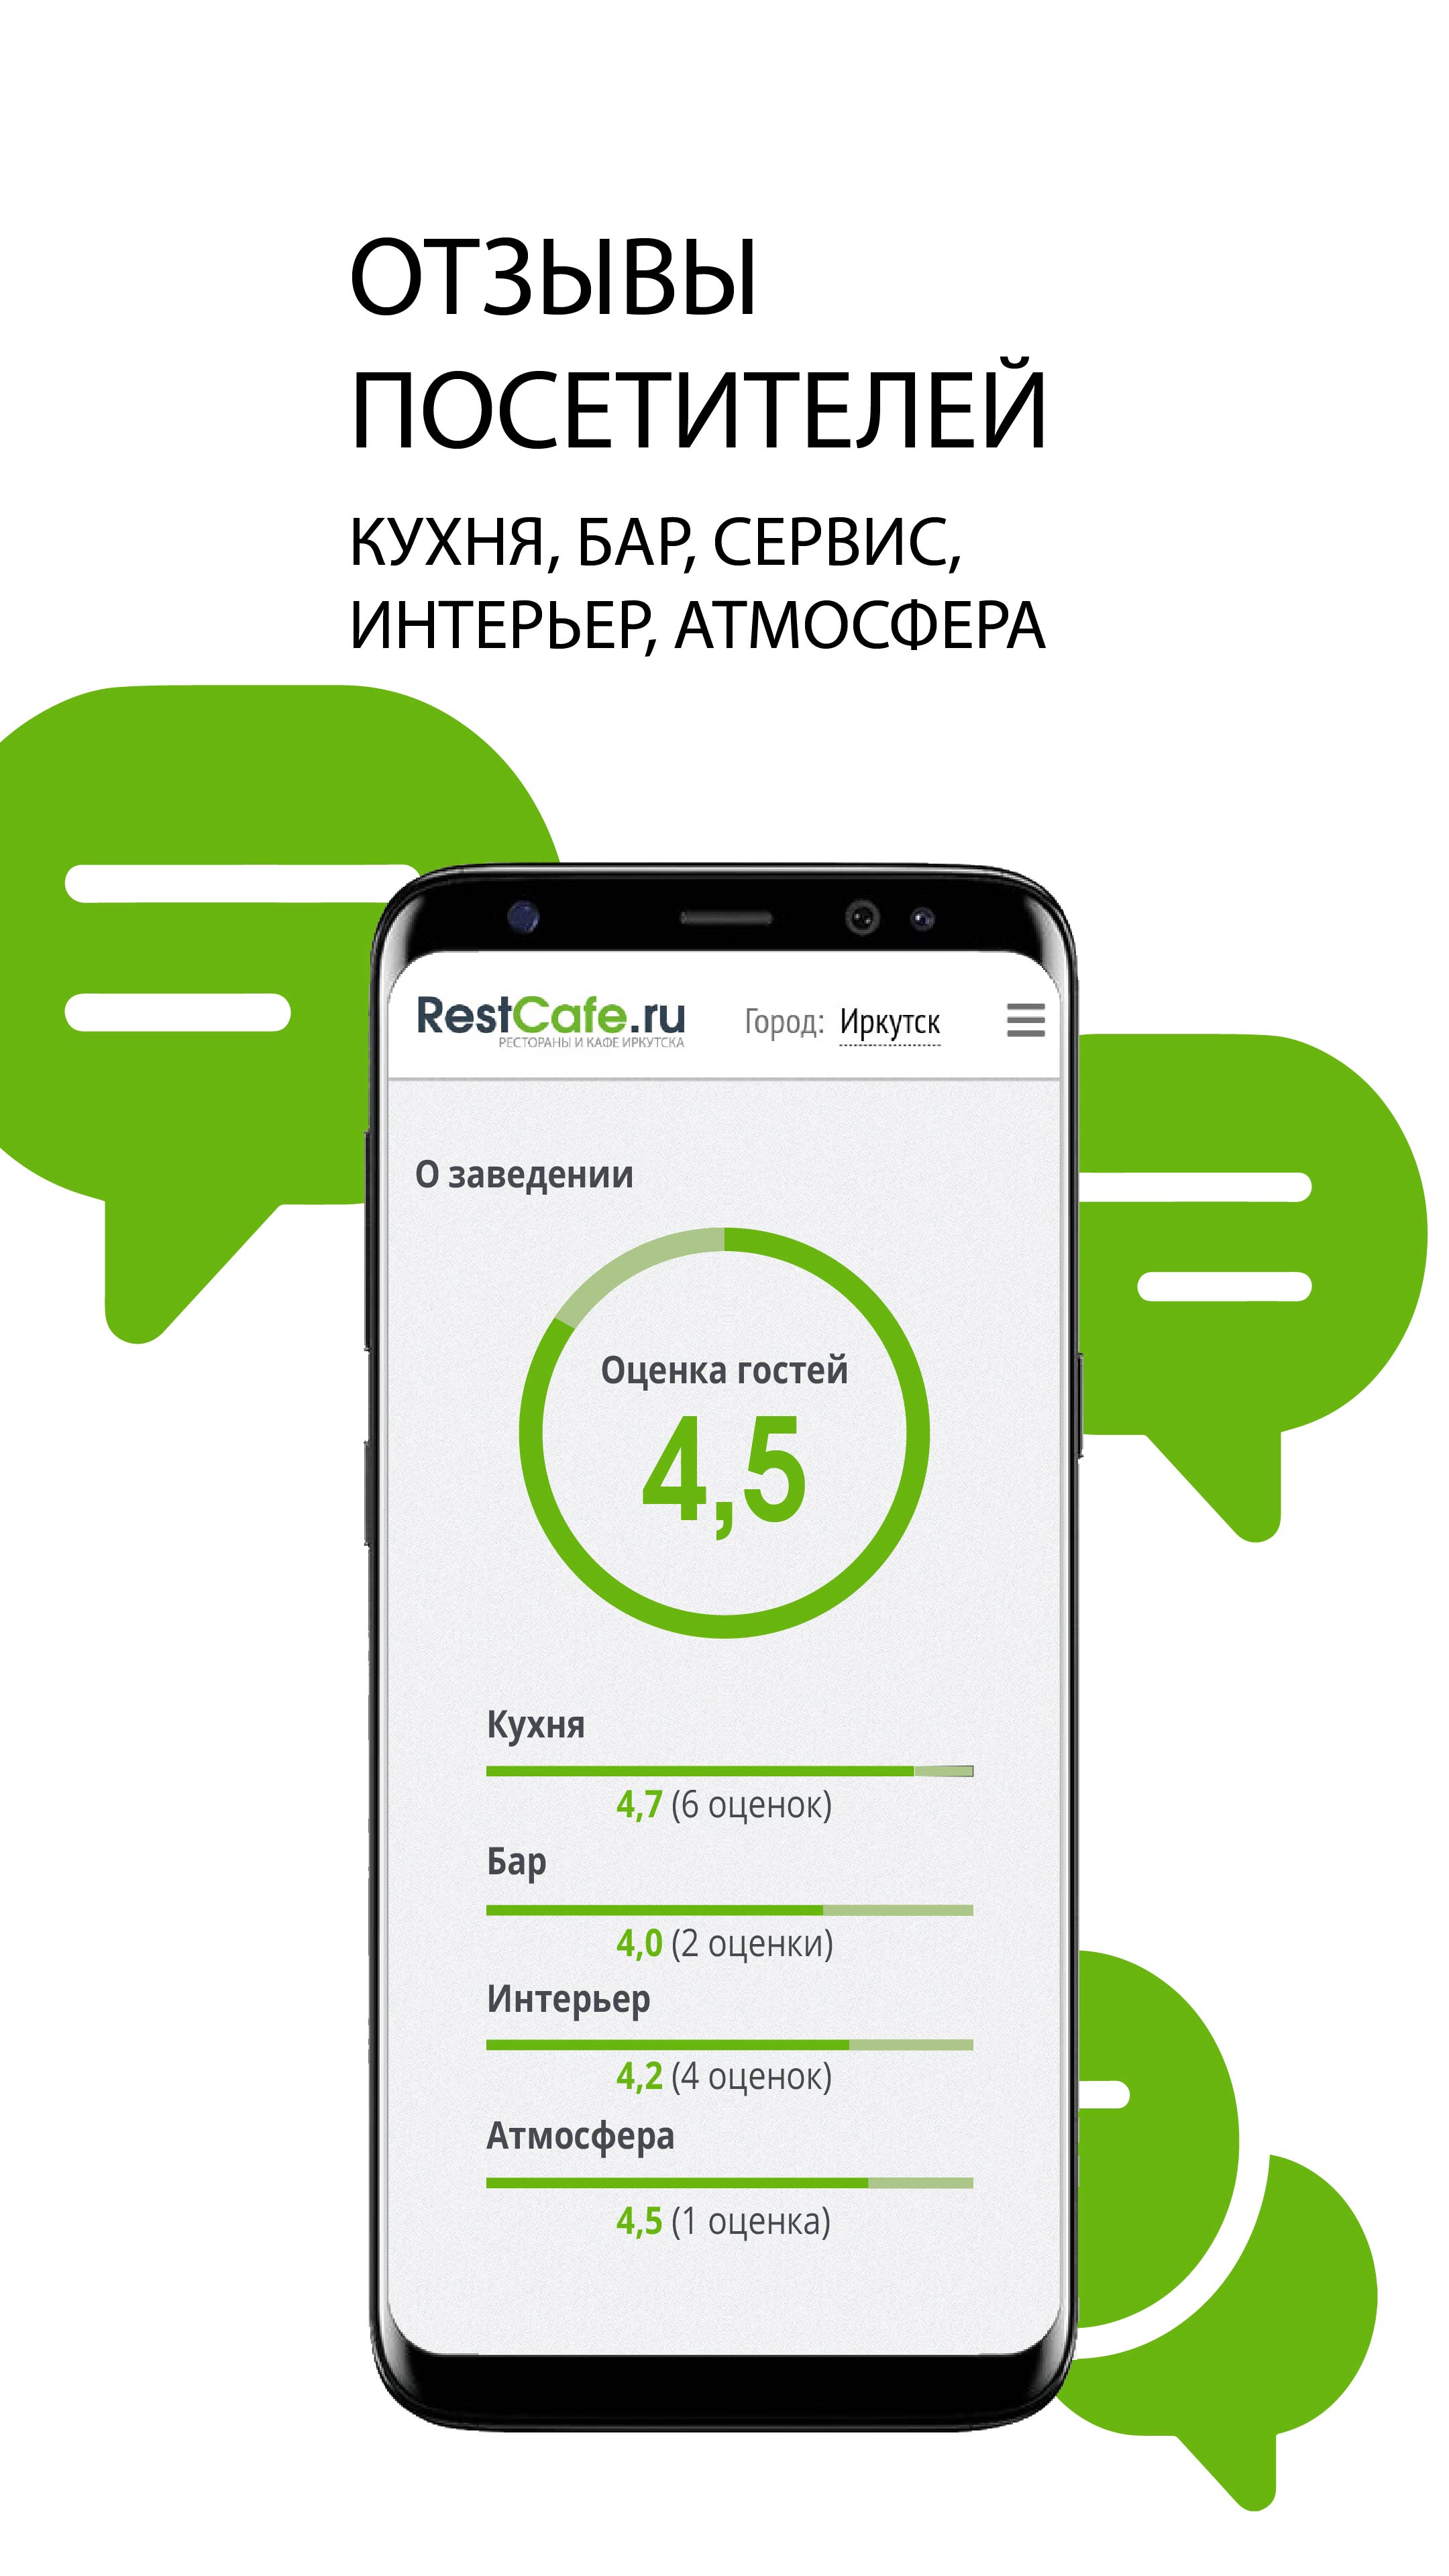 Изображение: RestCafe.ru – сервис бронирования и доставки еды